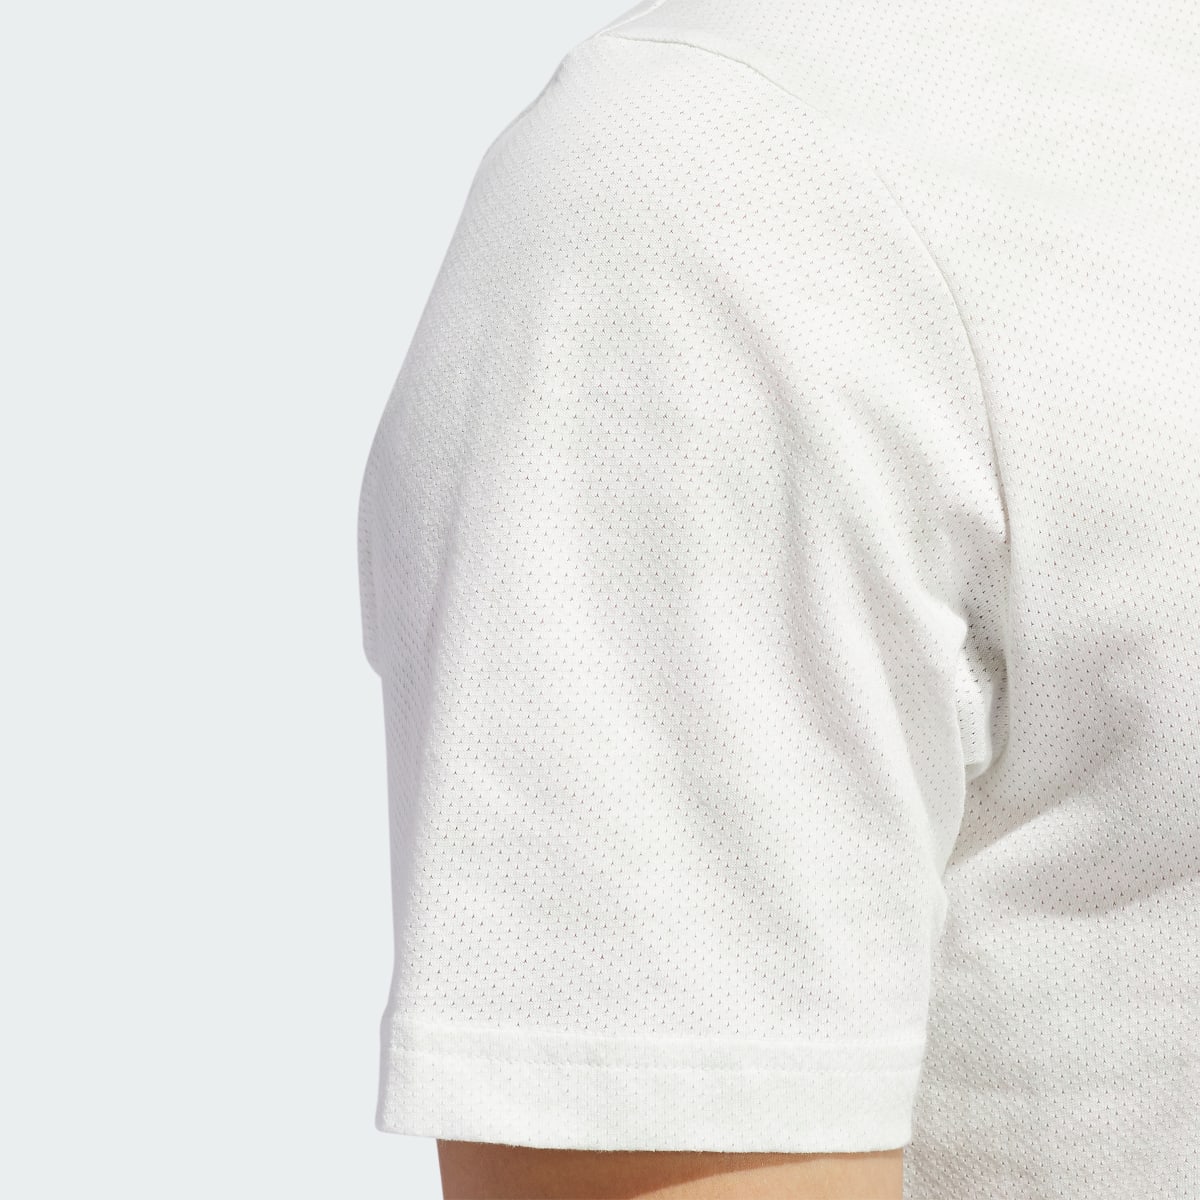 Adidas Go-To Printed Mesh Poloshirt. 8